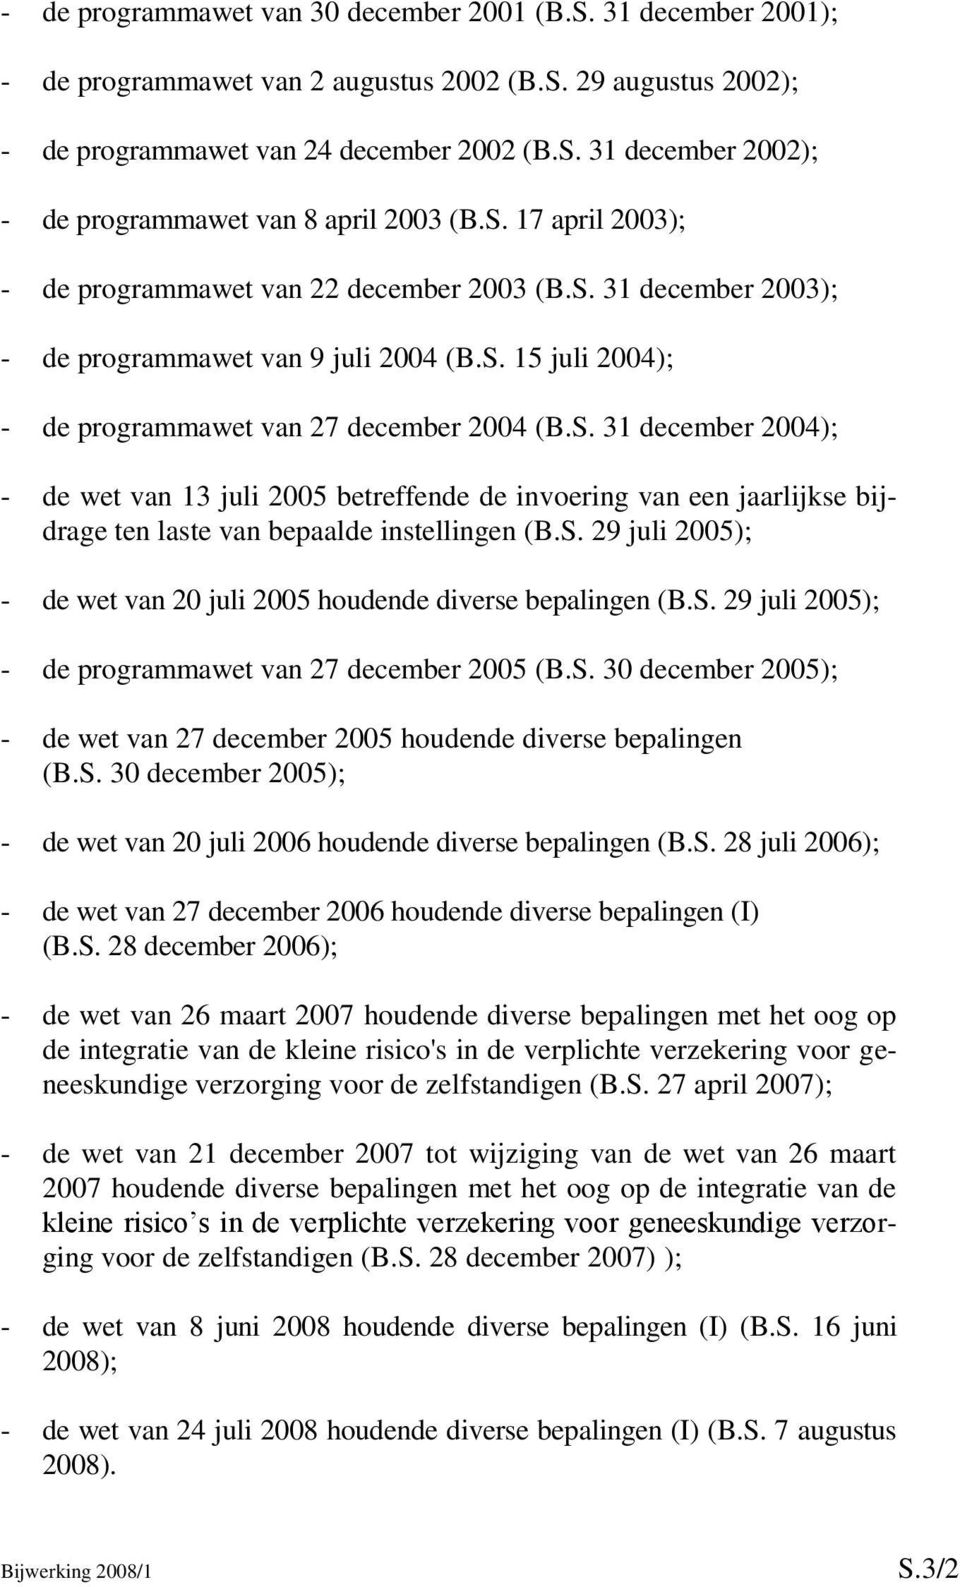 S. 29 juli 2005); - de wet van 20 juli 2005 houdende diverse bepalingen (B.S. 29 juli 2005); - de programmawet van 27 december 2005 (B.S. 30 december 2005); - de wet van 27 december 2005 houdende diverse bepalingen (B.